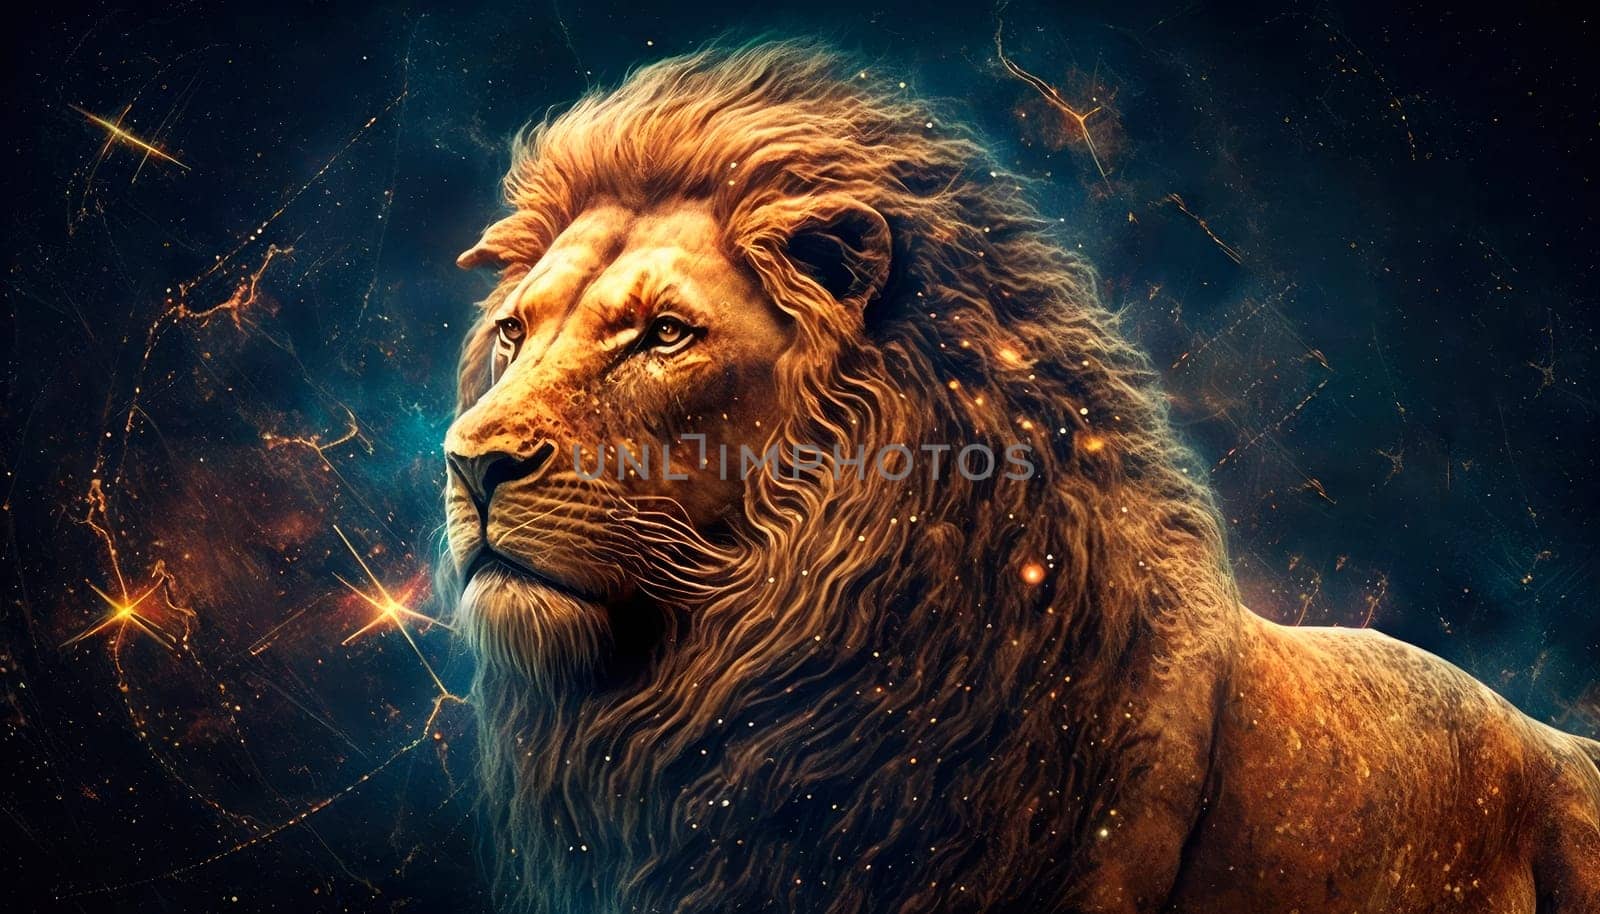 a lion zodiac sign on space background. by yanadjana